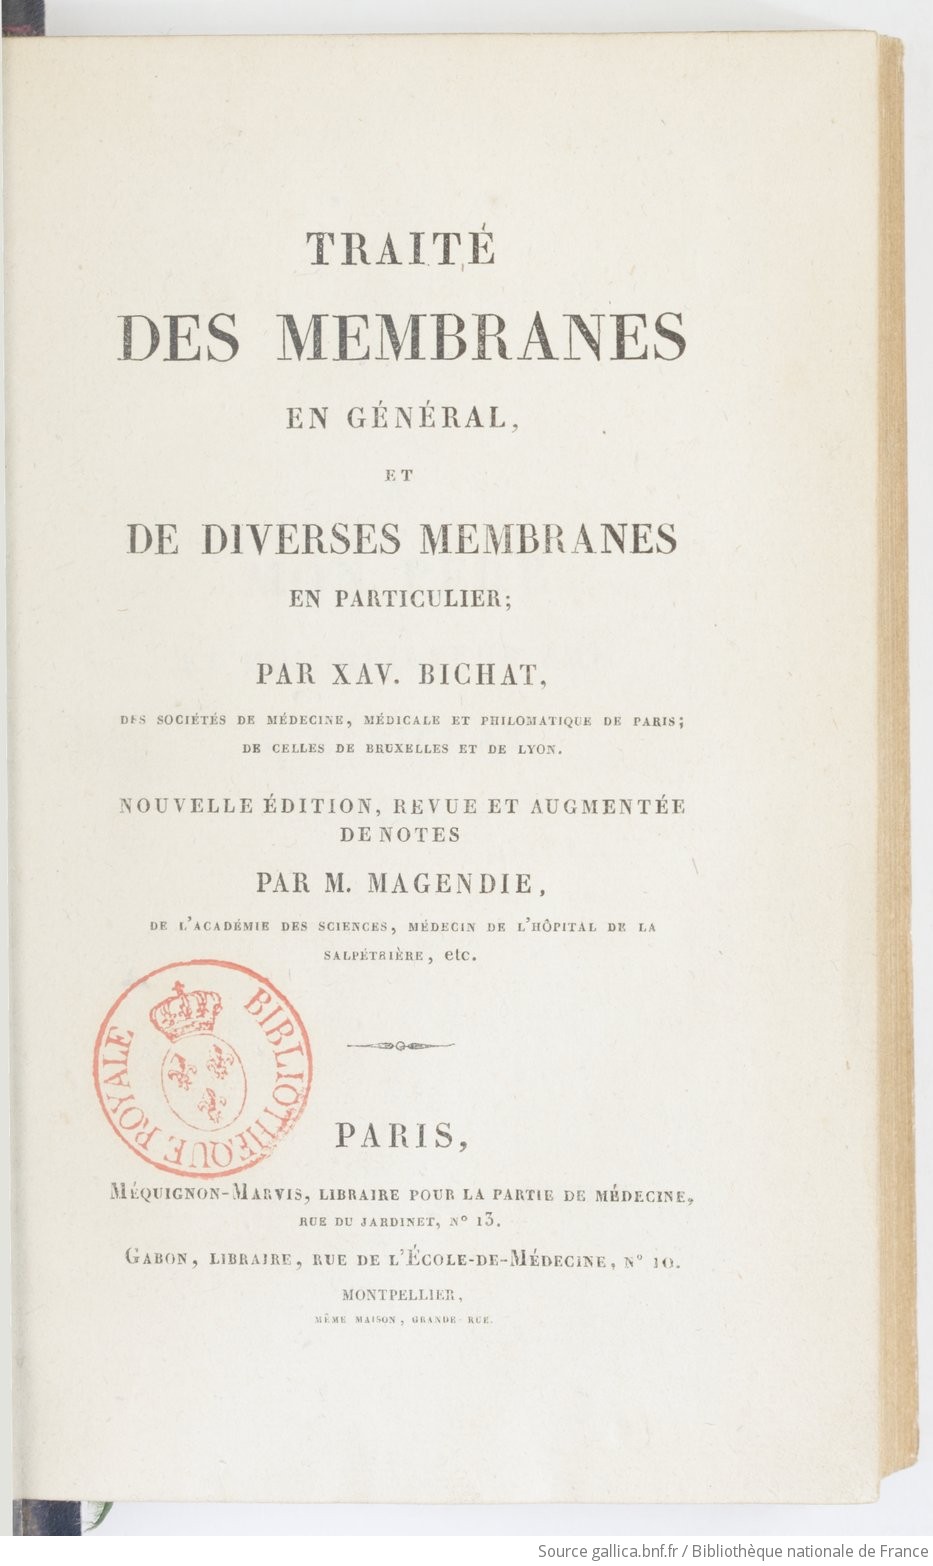 Traité des membranes en général et des diverses membranes en particulier.  Nouvelle édition, augmentée d’une notice historique sur la vie et les